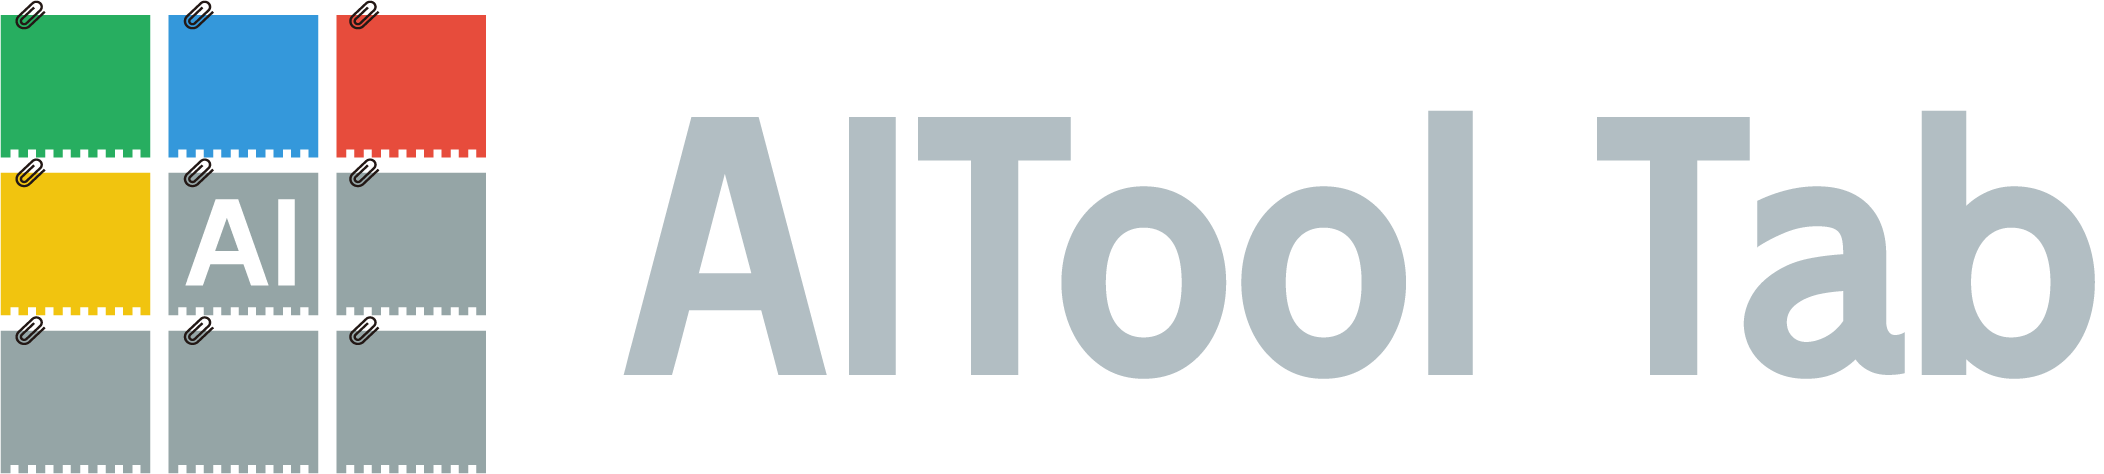 AIToolTab